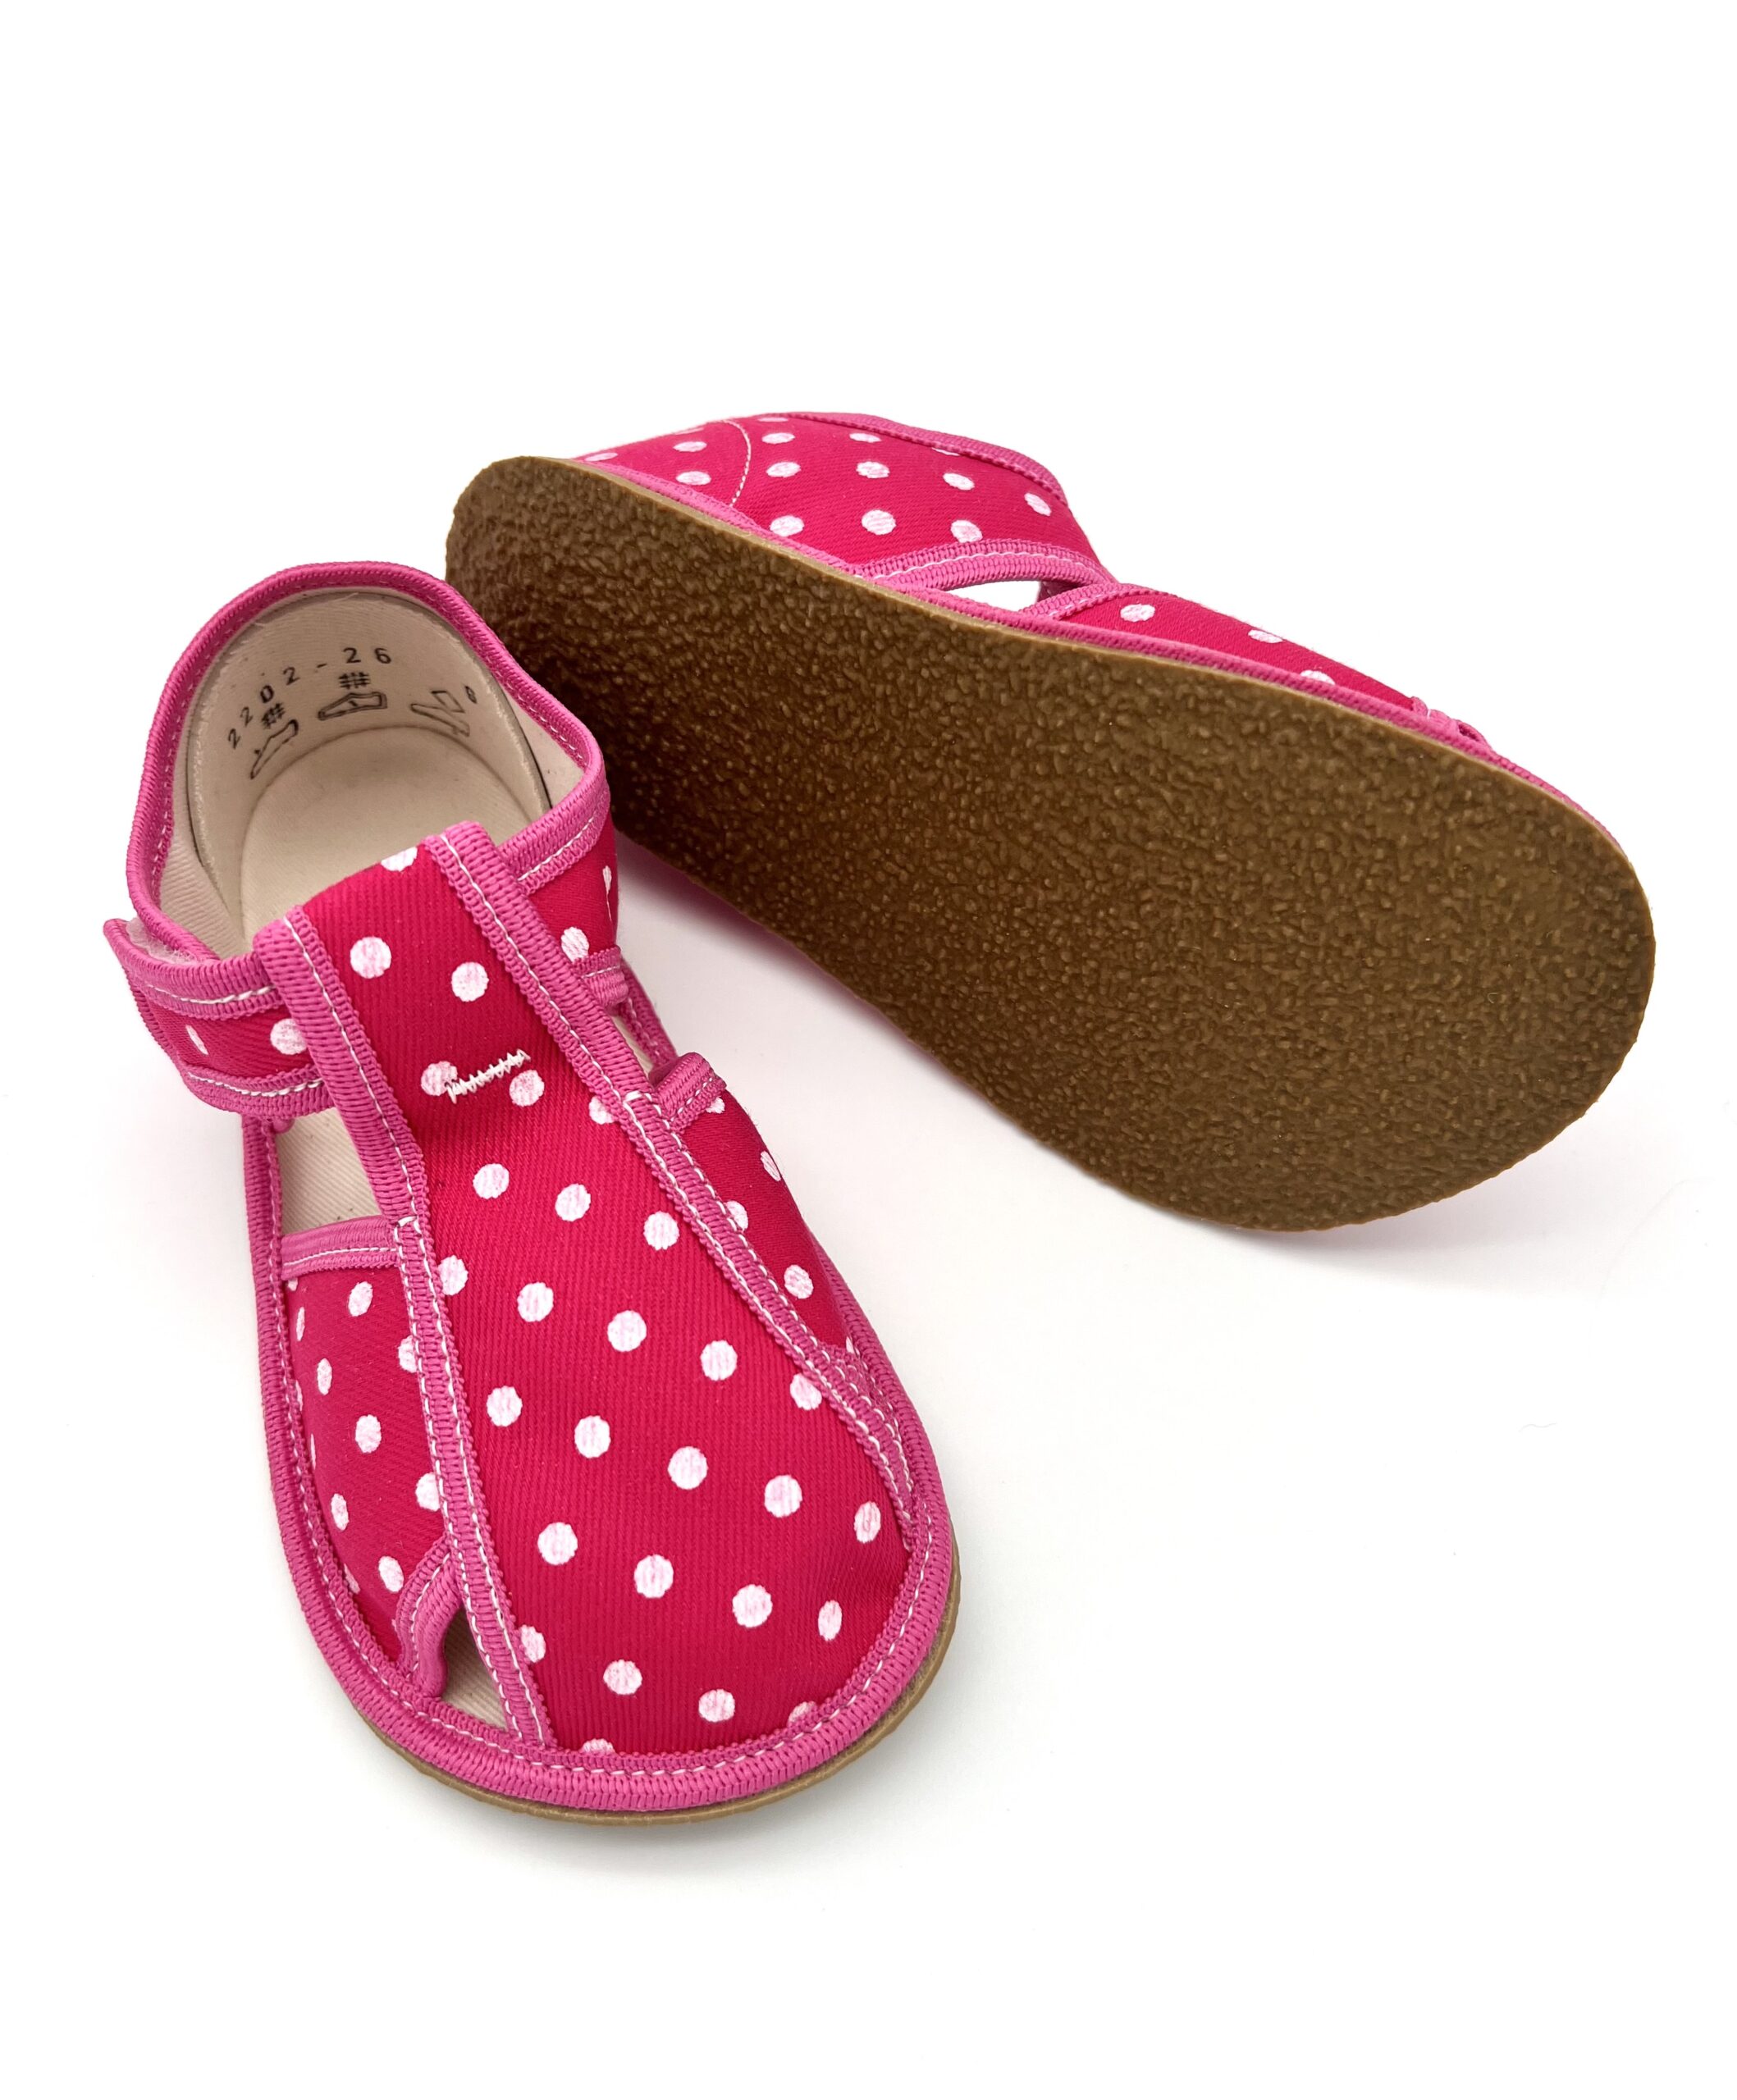 Baby Bare sisejalatsid Pug Laste barefoot jalatsid - HellyK - Kvaliteetsed lasteriided, villariided, barefoot jalatsid